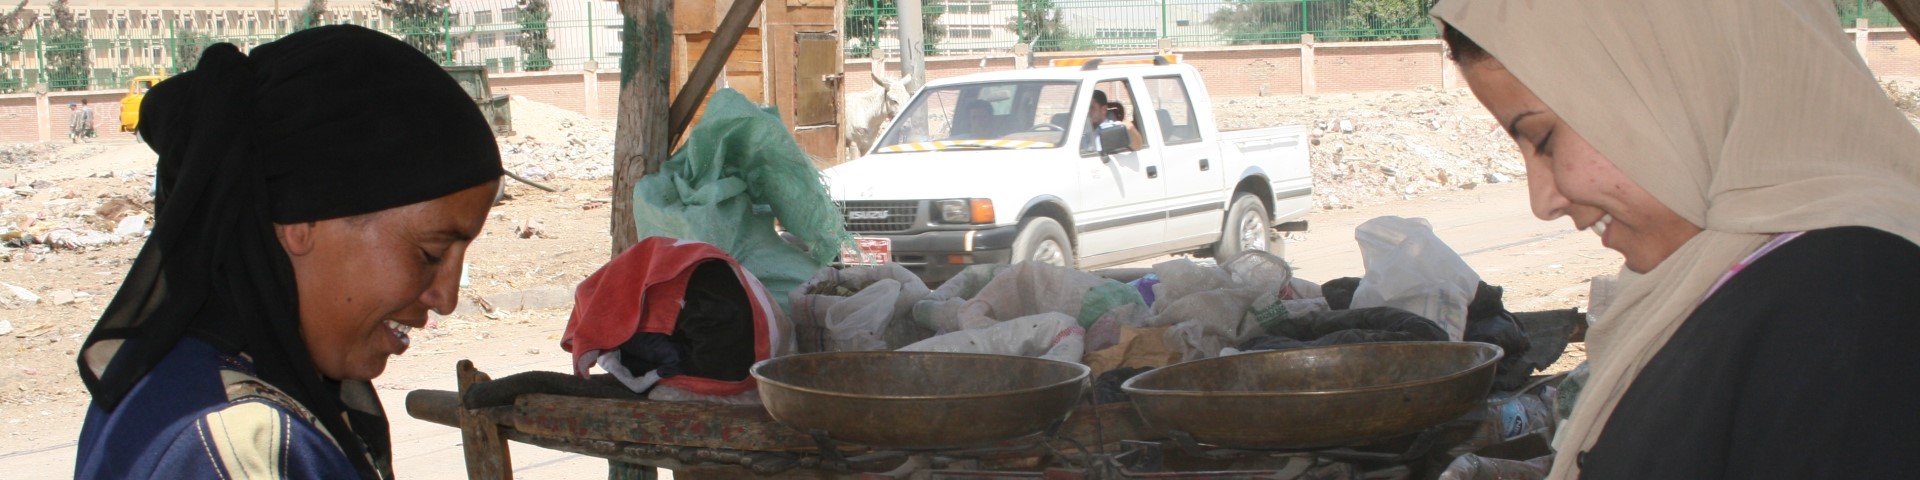 Zwei Frauen bereiten eine Mahlzeit an einem Straßenstand zu.